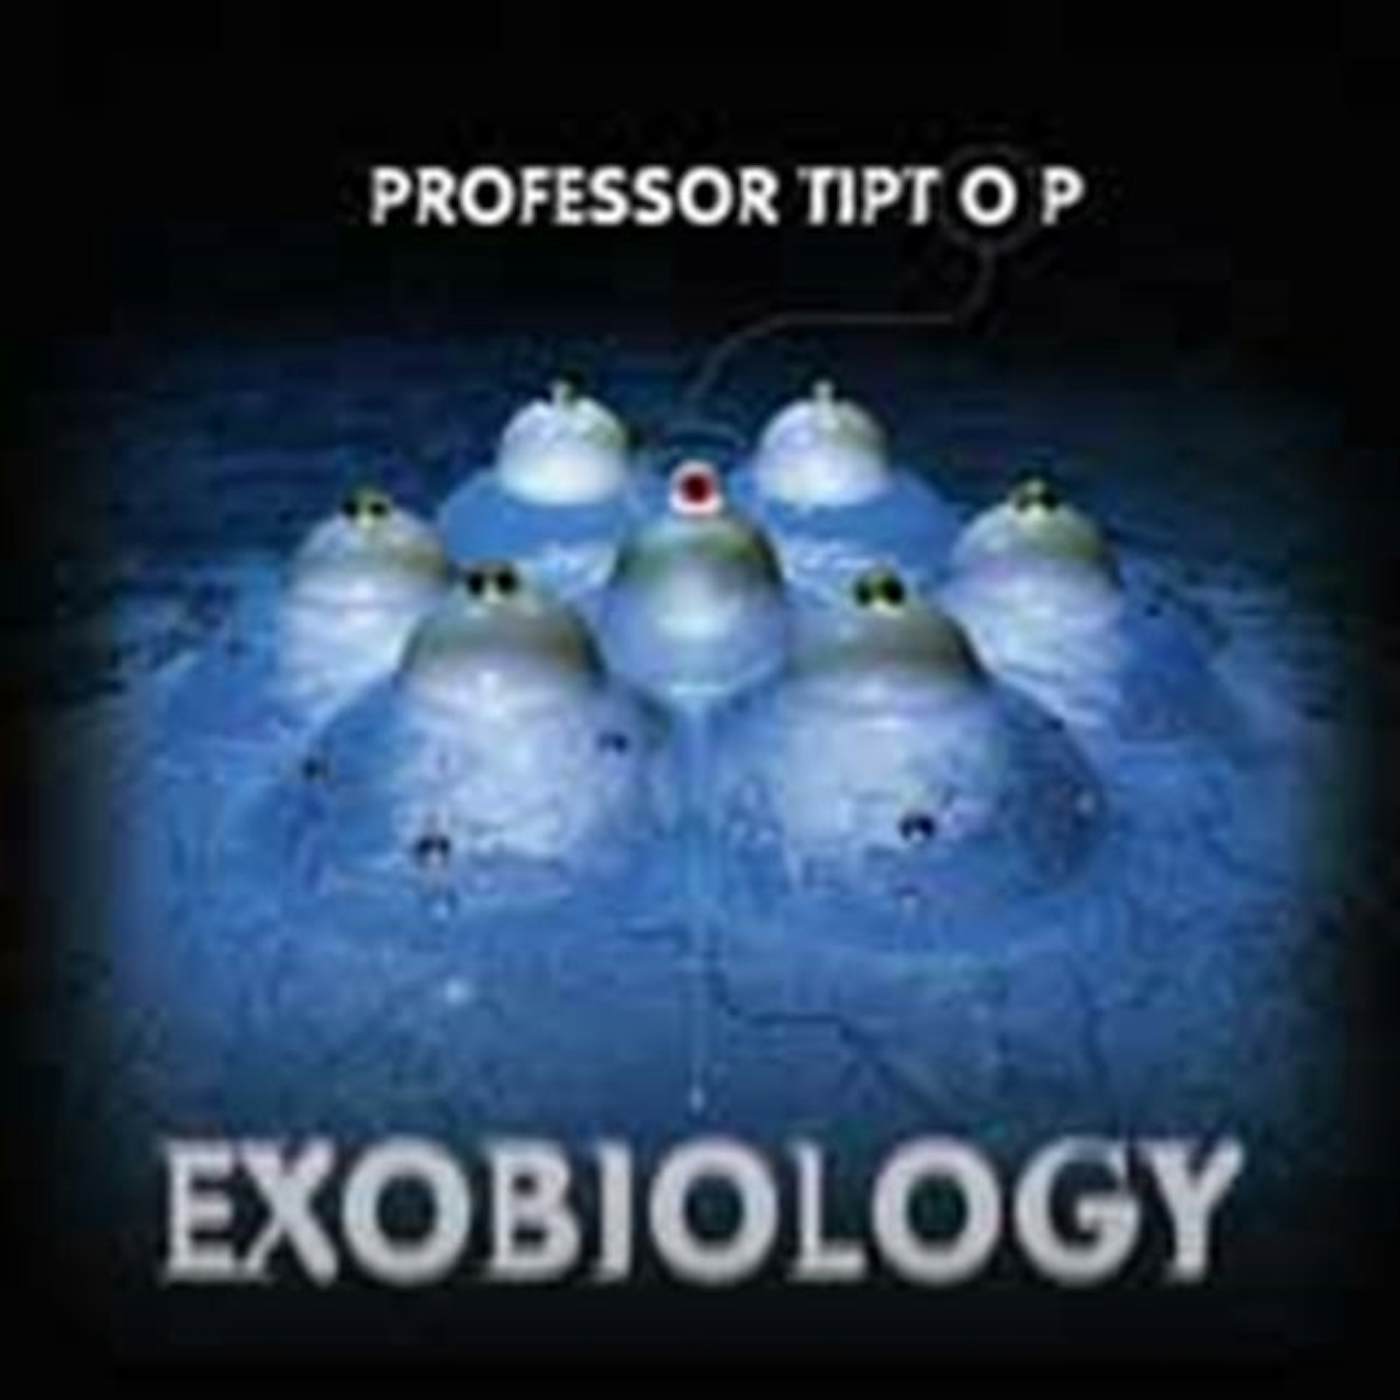 Professor Tip Top CD - Exobiology